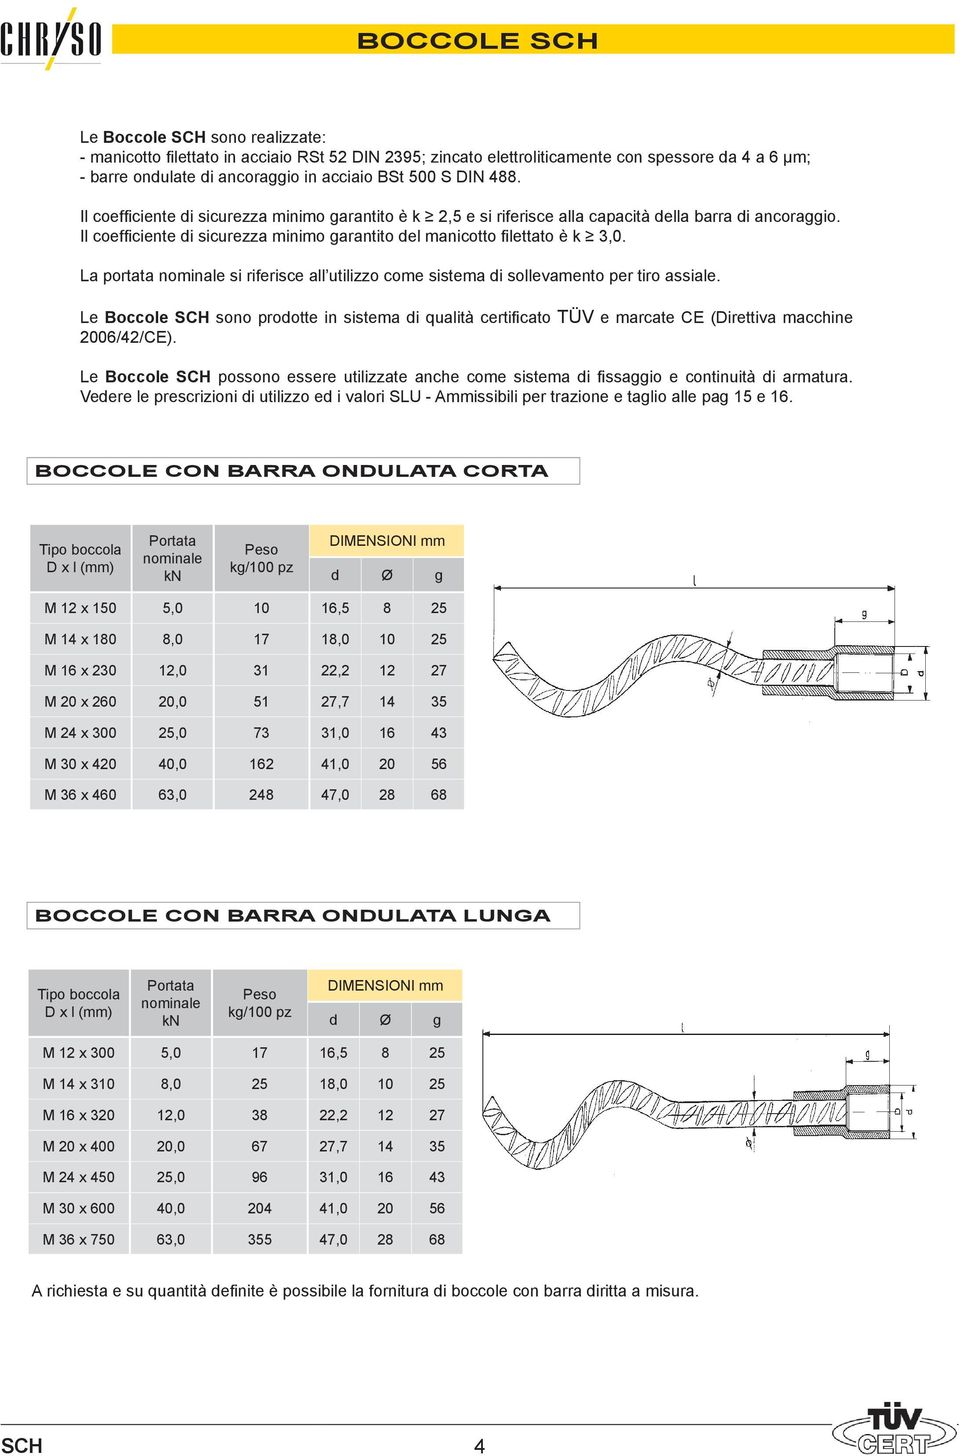 La portata si riferisce all utilizzo come sistema di sollevamento per tiro assiale. Le Boccole sono prodotte in sistema di qualità certificato TÜV e marcate CE (Direttiva macchine 2006/42/CE).